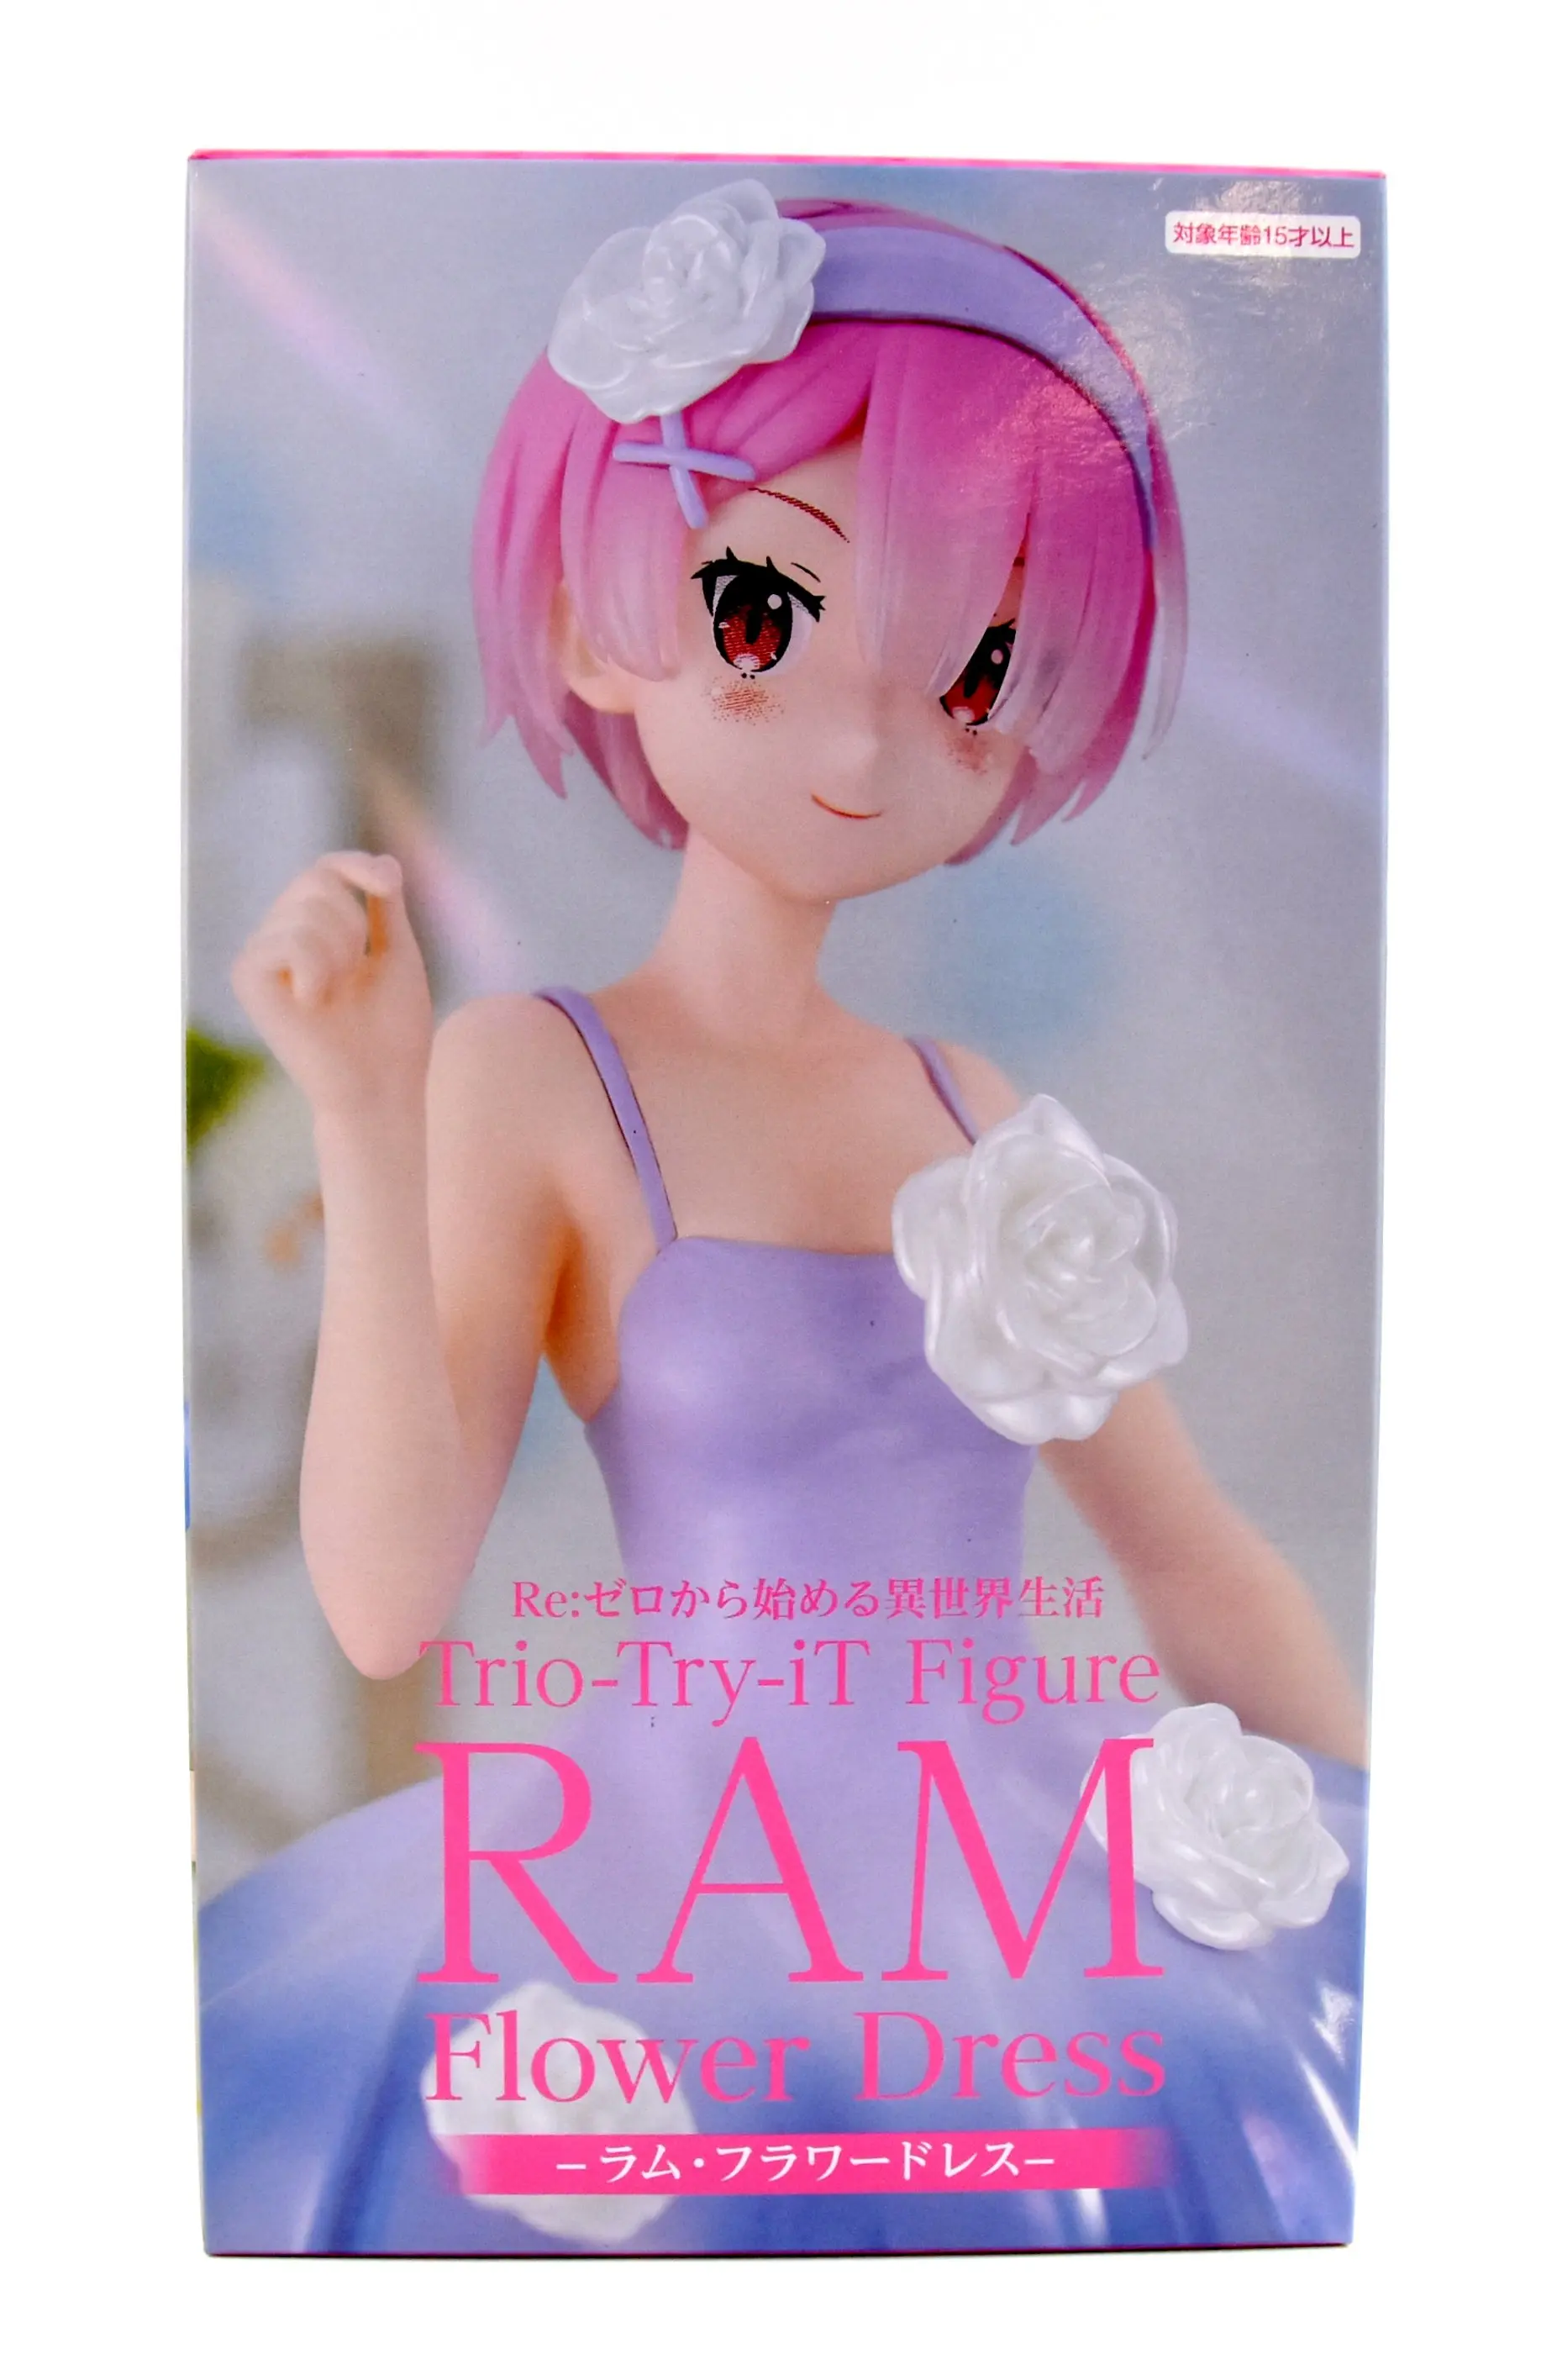 Prize Figure - Figure - Re:Zero / Ram